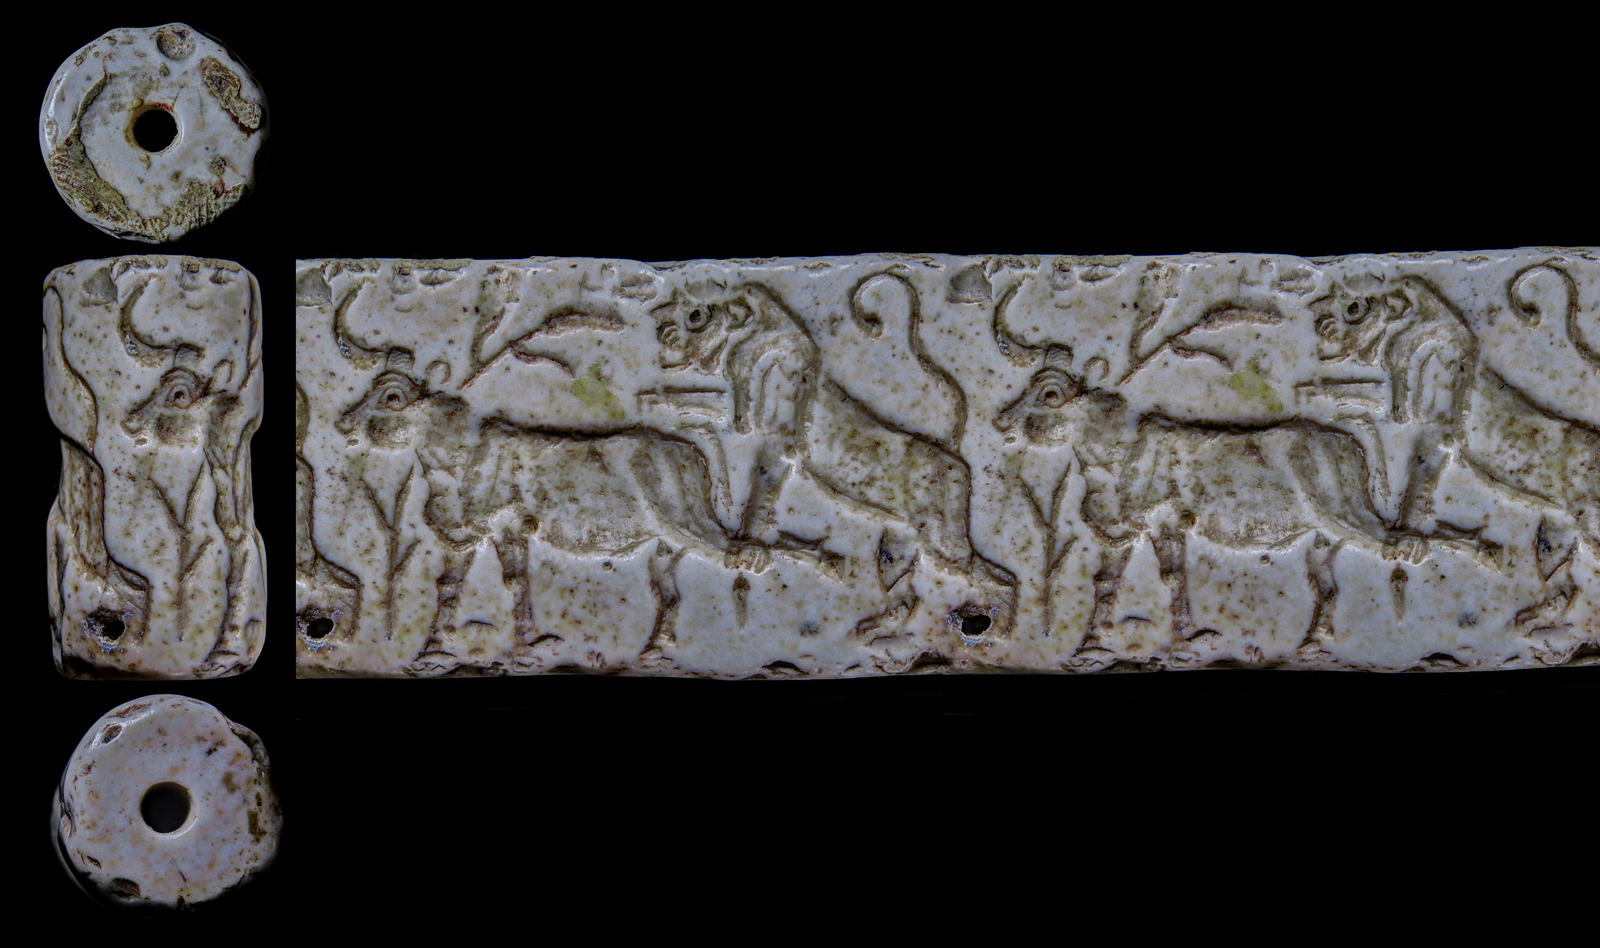 Un lion attaque un taureau par derrière en le saisissant par une patte. Matériau: marbre, hauteur: 34 mm. Époque d'Uruk (3500-2900 av. J.-C.). Mésopotamie du Sud. DMMA, BnF D2, P475970.   